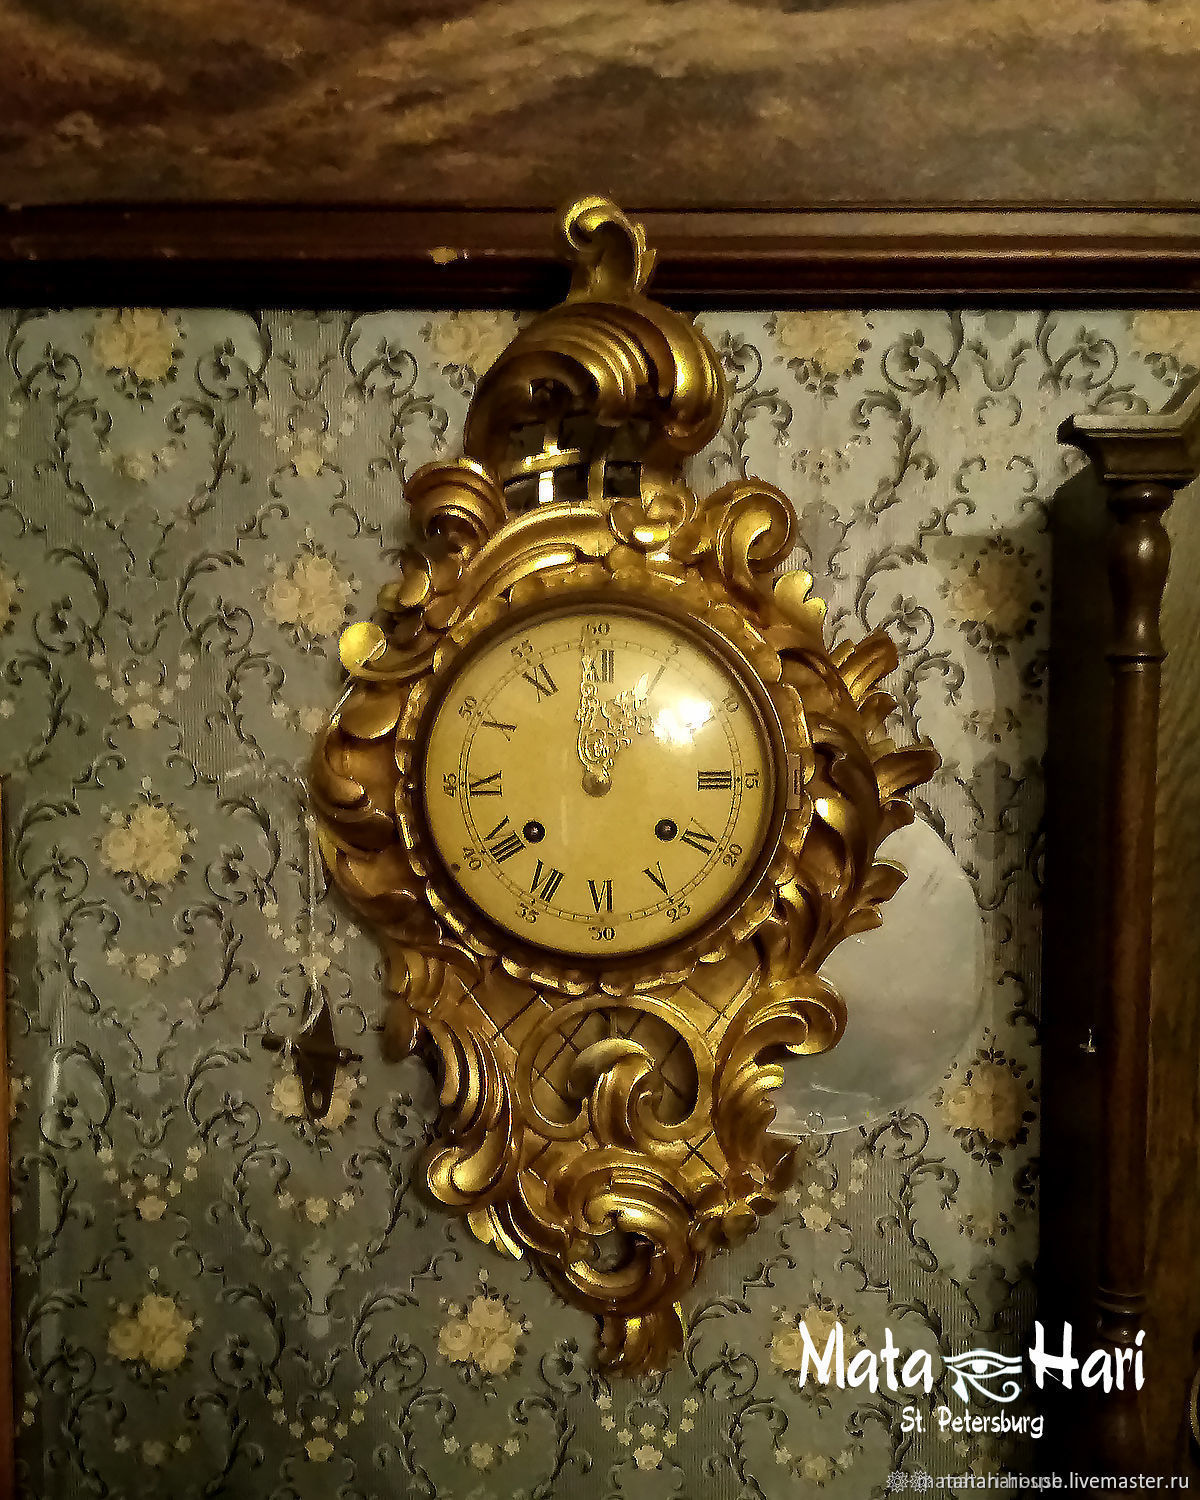 Часы позолоченные закопченные стены. Старинные настенные часы с позолотой. Часы с позолотой настенные. Часы настенные позолоченные. Деревянные часы с позолотой.